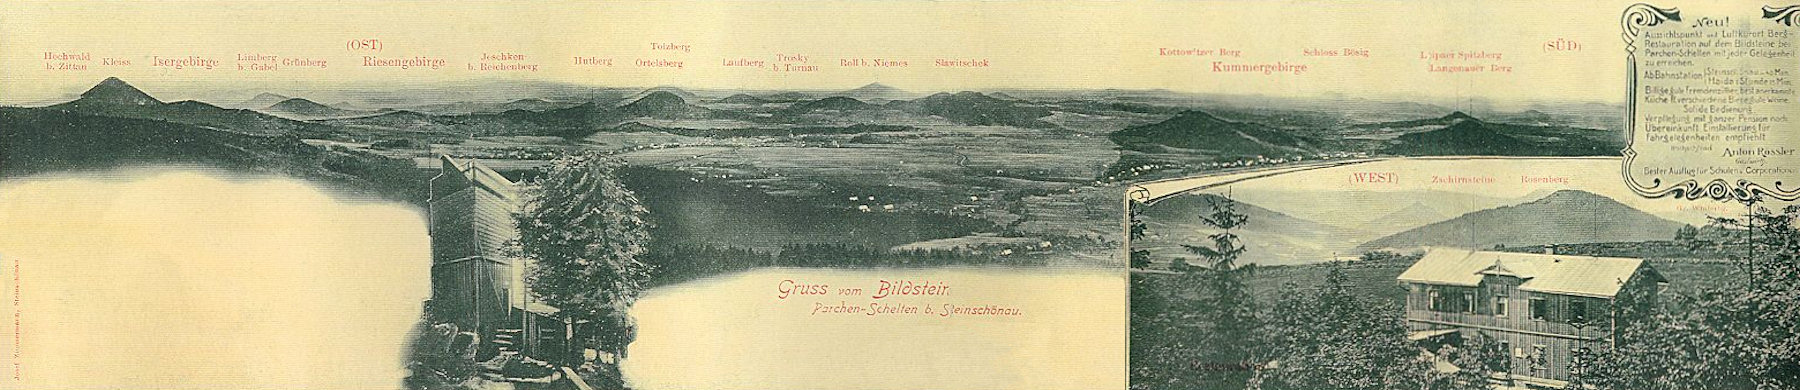 Obrázek (Bildstein) bei Prácheň (Parchen)</b><br>Diese Faltkarte zeigt den südöstlichen, schönsten Teil der Aussicht vom Obrázek (Bildstein) bei Prácheň (Parchen). Der auffallendste Berg links ist der Klíč (Kleis), den Horizont hinter ihm schliesst das Iser- und Riesengebirge ab, ausserdem sieht man z. B. der Ortel- (Urteil-) Berg, die Berge Tlustec (Tolzberg), Ralsko (Roll), Chotovický vrch (Kottowitzerberg), Skalický vrch (Langenauer Berg) und Bezděz (Bösig). Die Bilder unten zeigen den hölzernen Aussichtsturm und die neben ihm stehende Gaststätte.